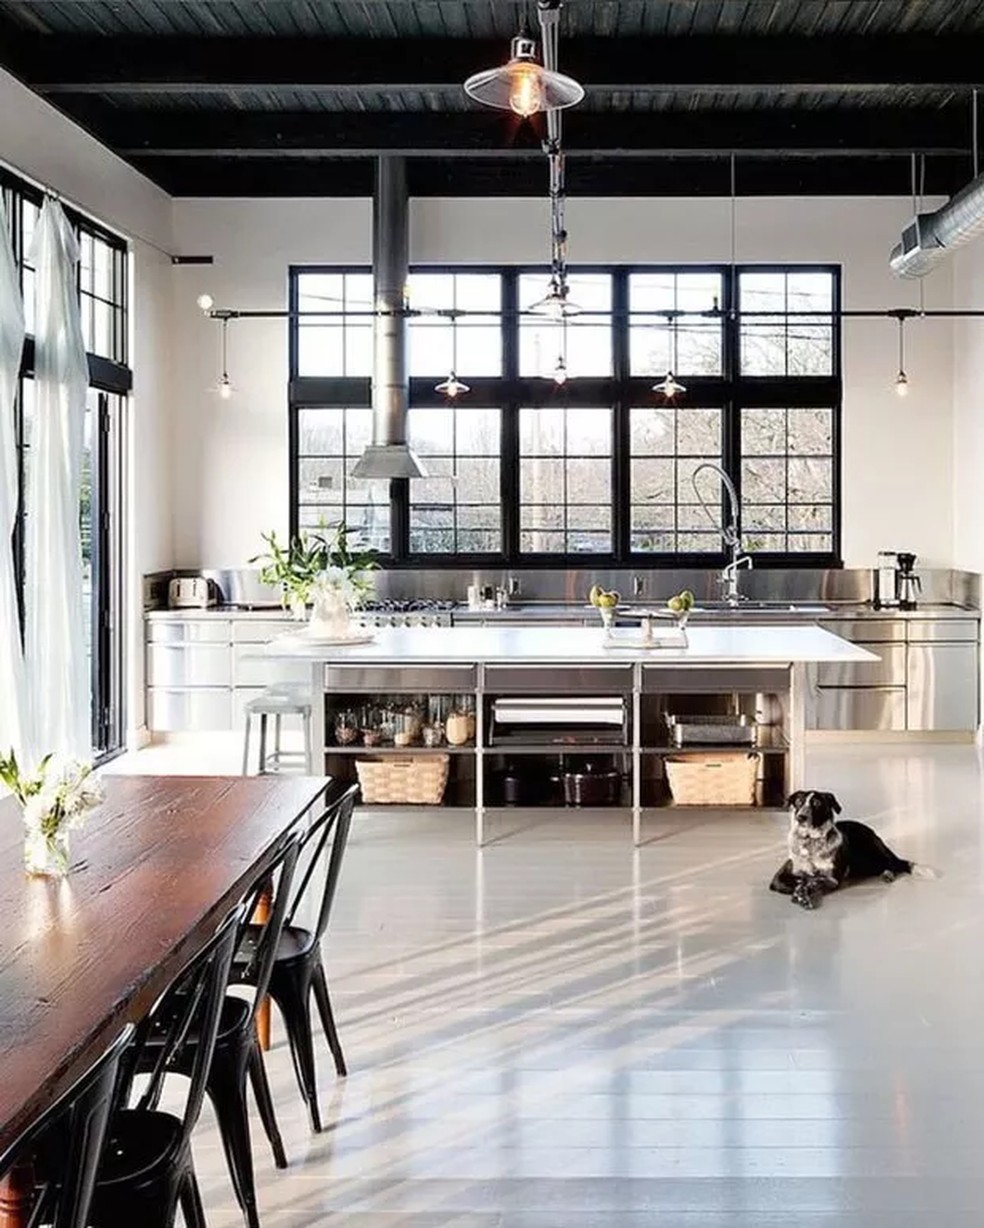 Cozinha de inox assinada pelo escritório Emerick Architects — Foto: Divulgação